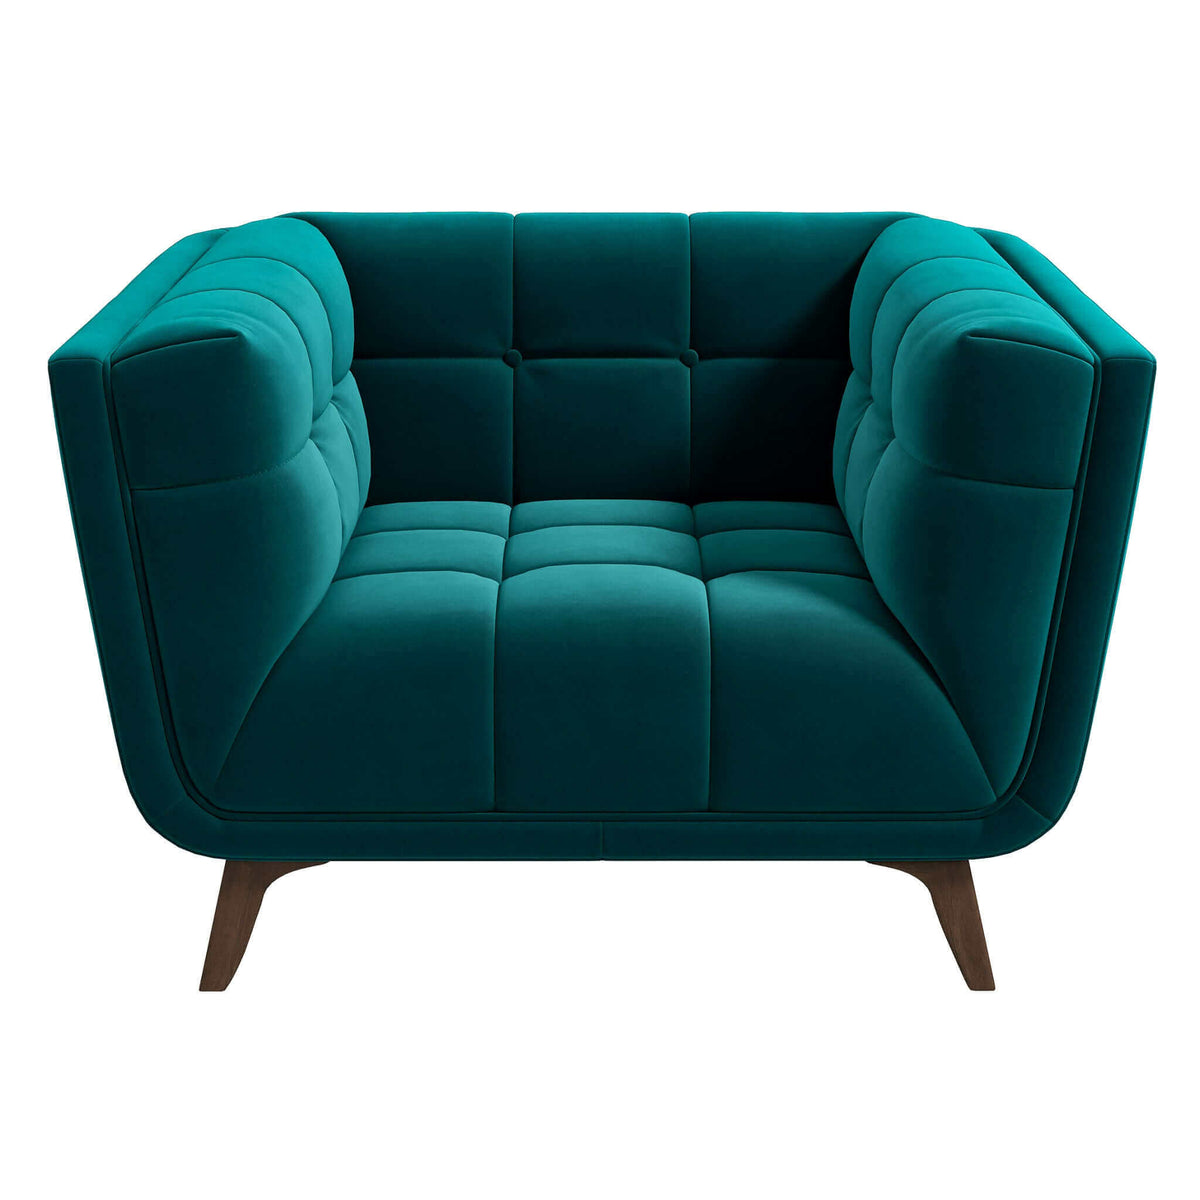 Addison Mid Century Modern Teal Velvet Lounge Chair